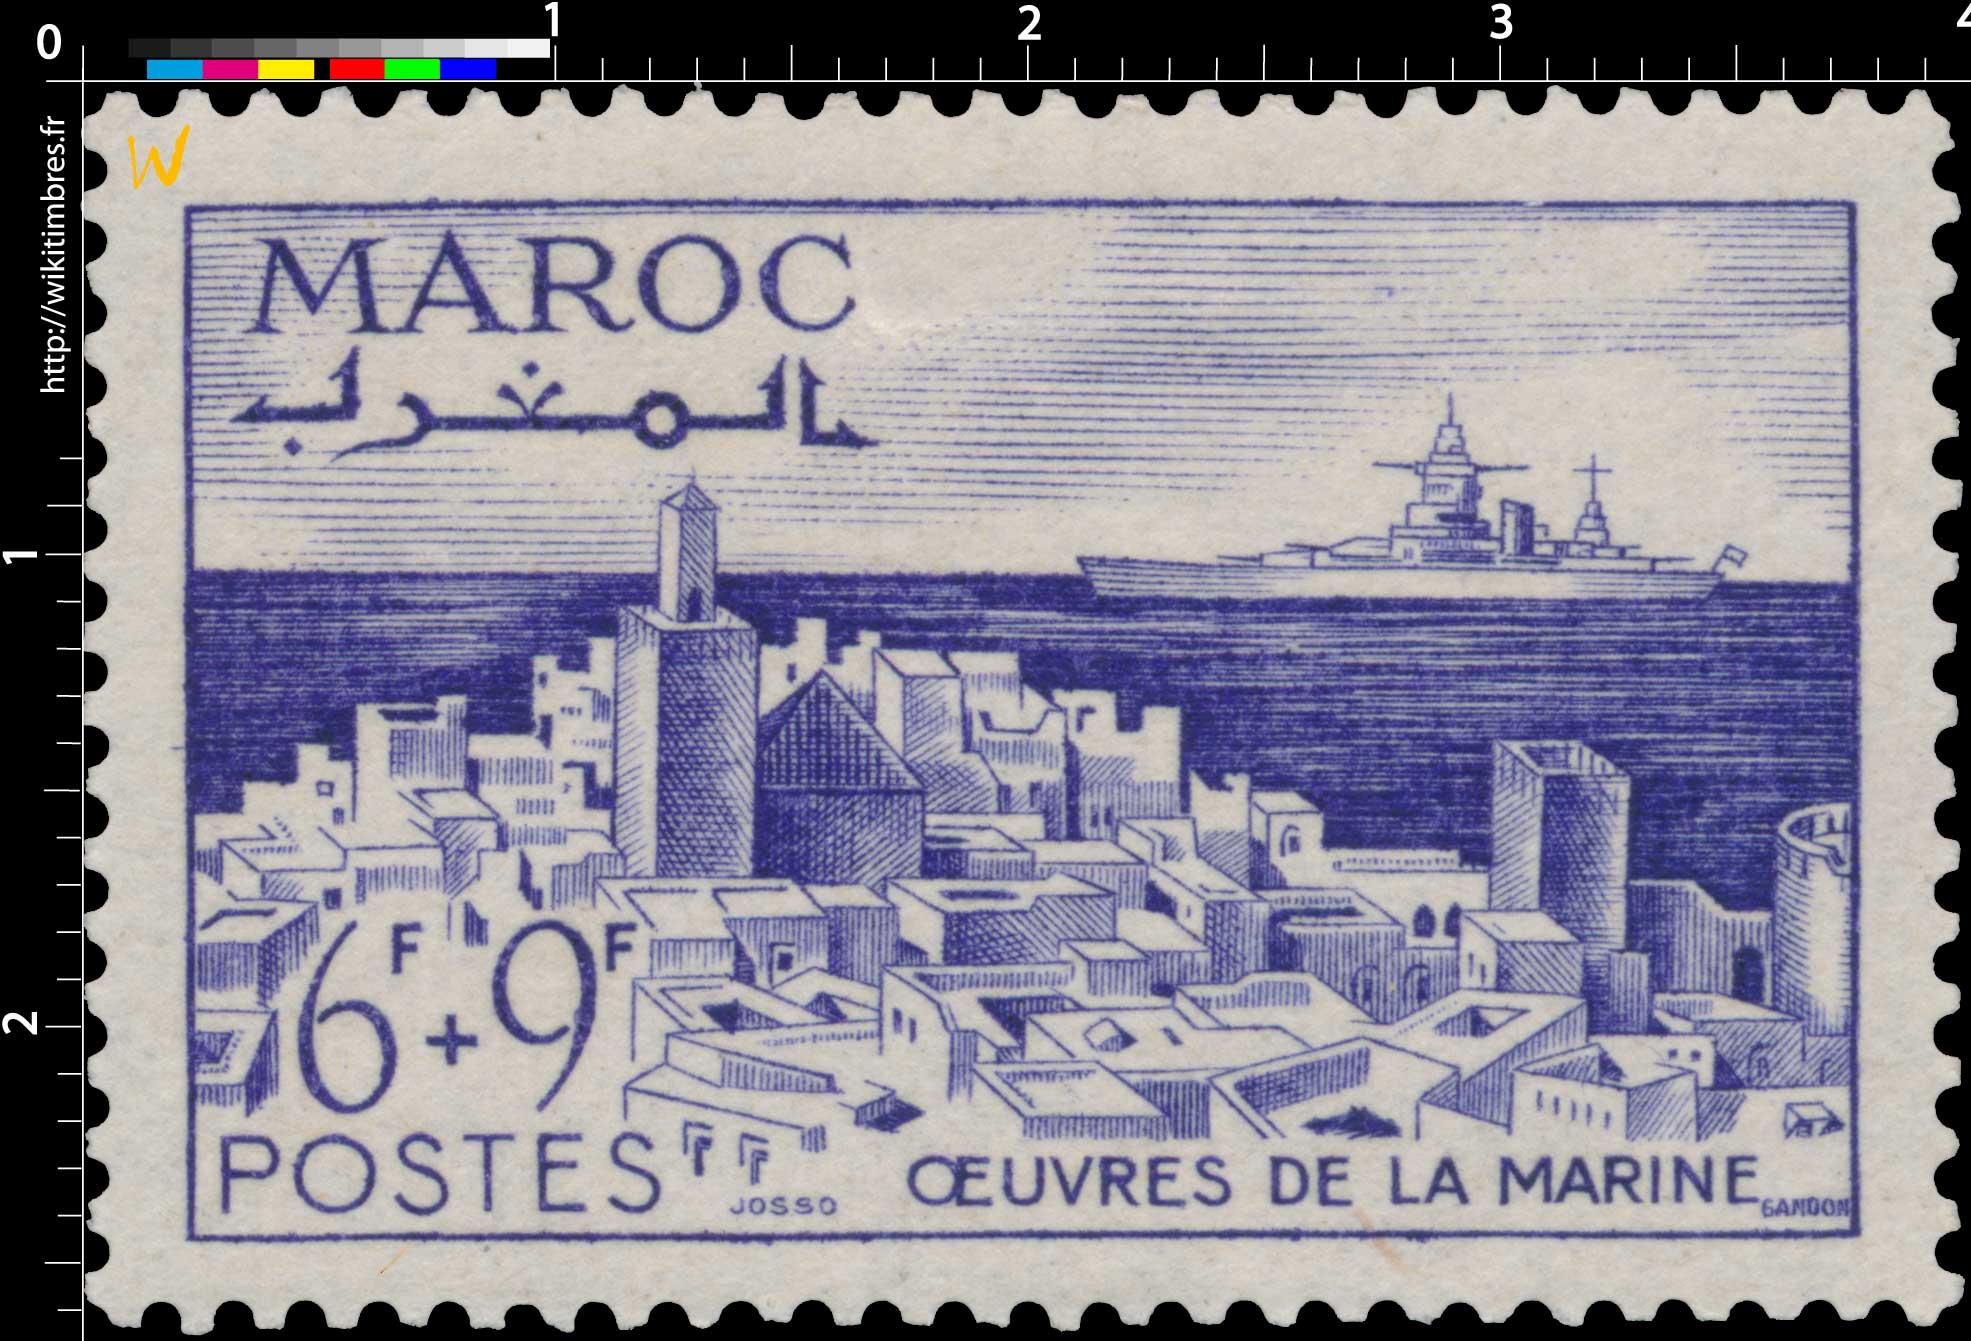 1948 Maroc - Pour les Oeuvres de la Marine - Kasbah d'Agadir